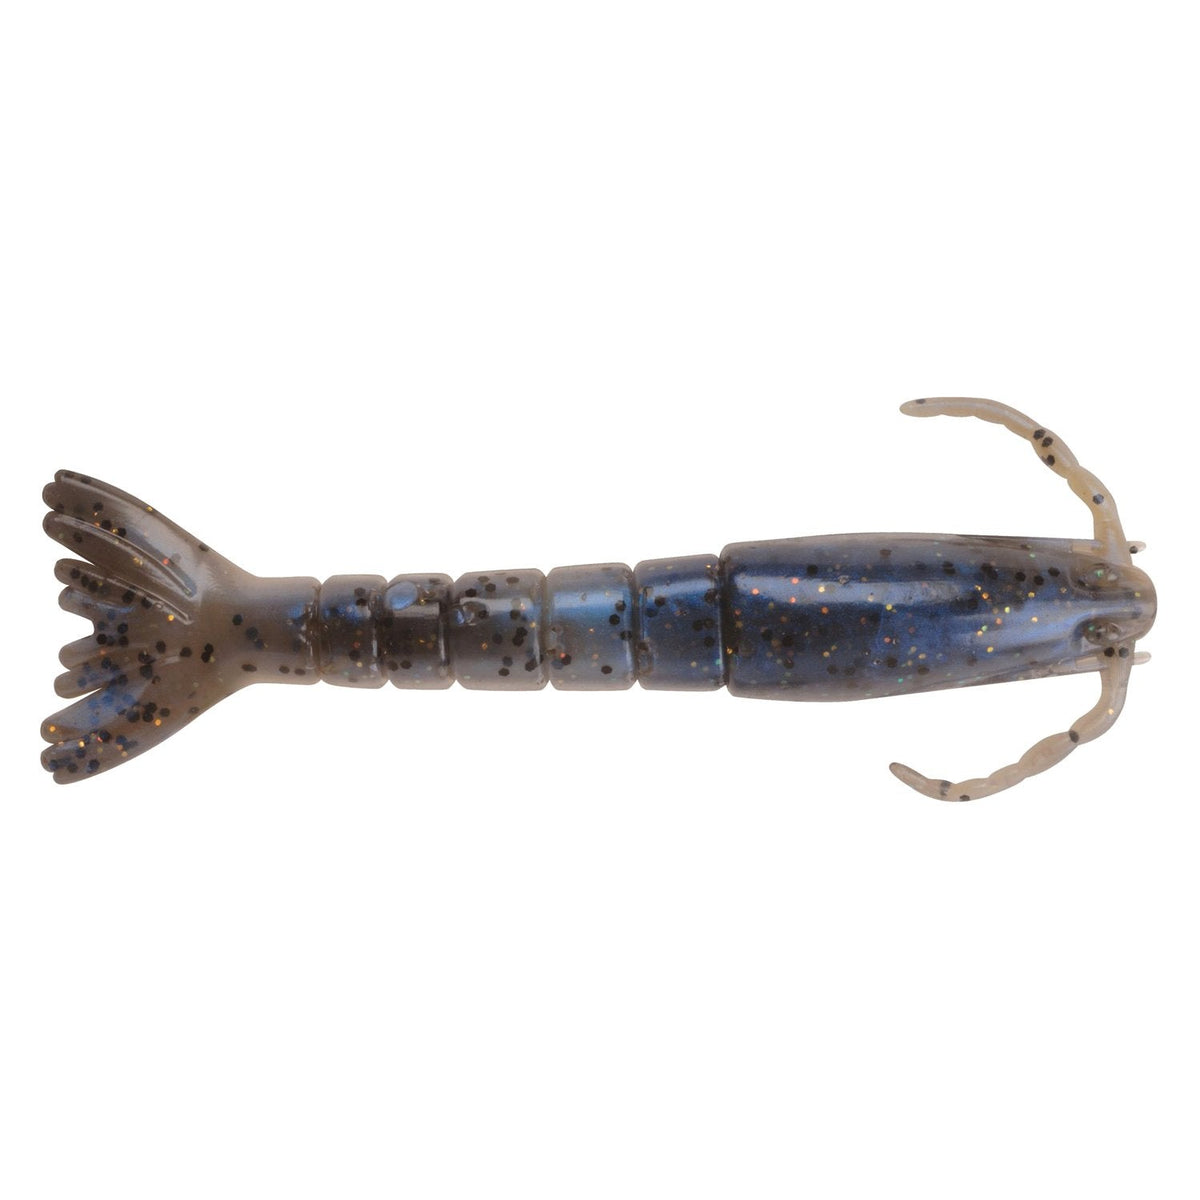 Buy 2 Berkley Gulp! Alive! Saltwater Shrimp Get 1 FREE